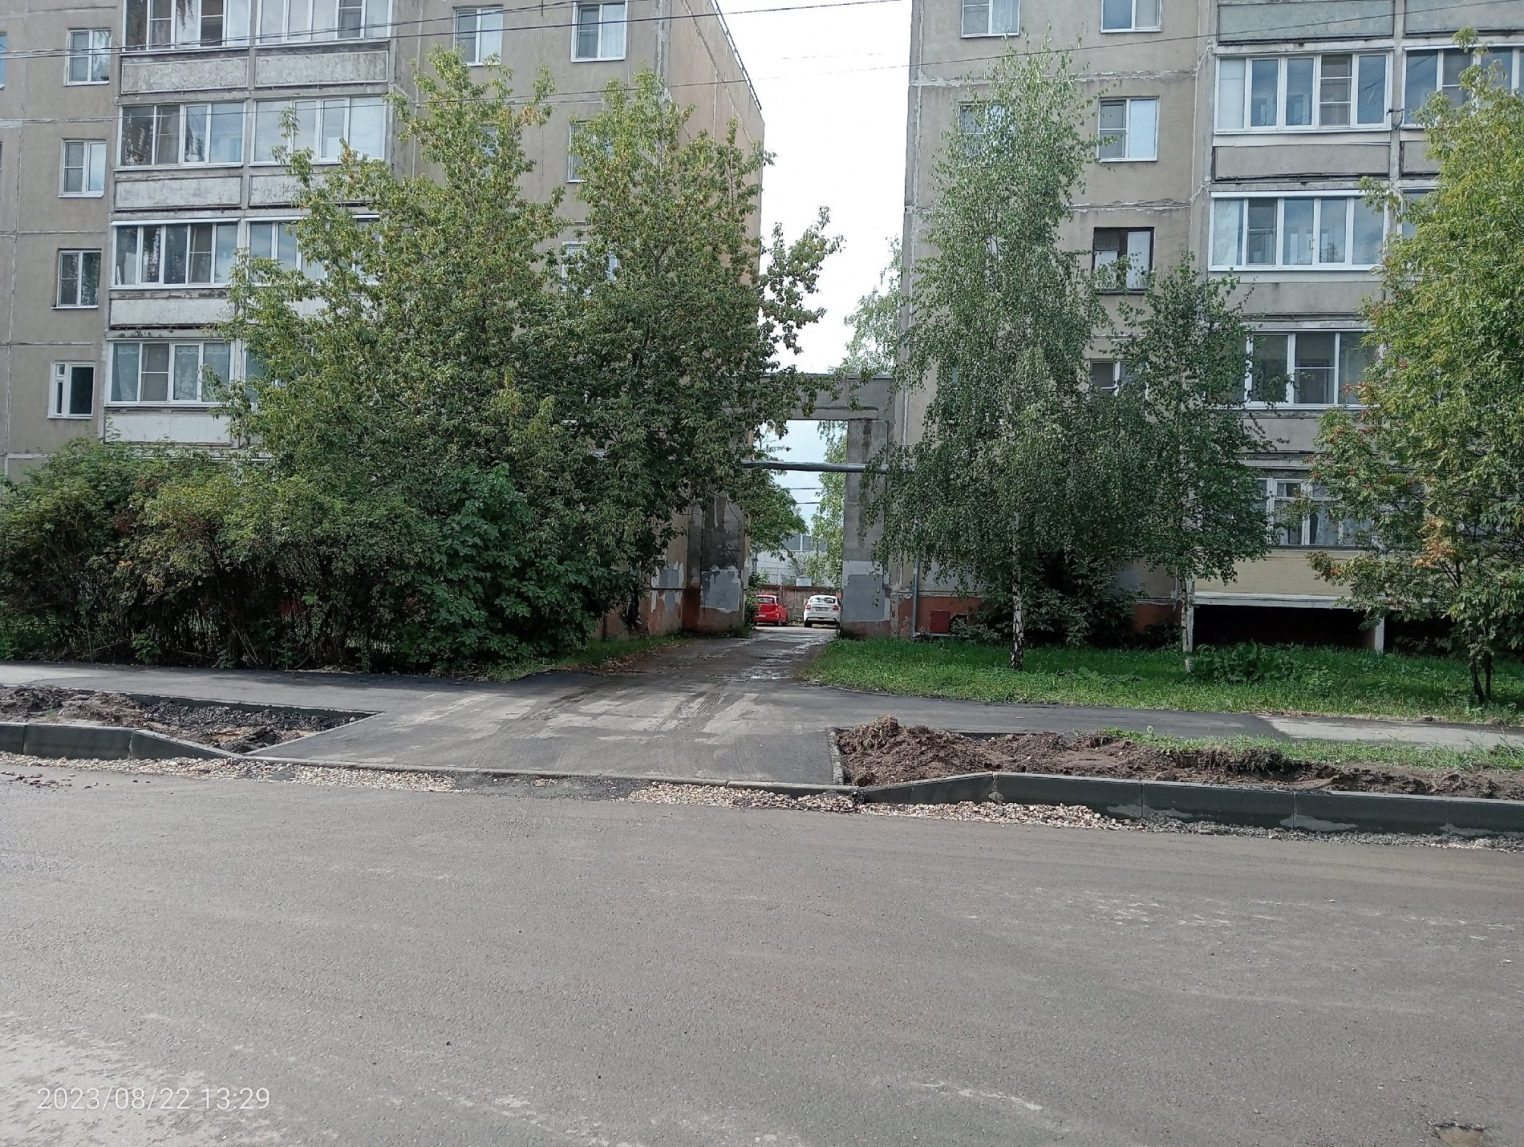 Встретим камнями: в Костроме разгорелась война из-за проезда по двору